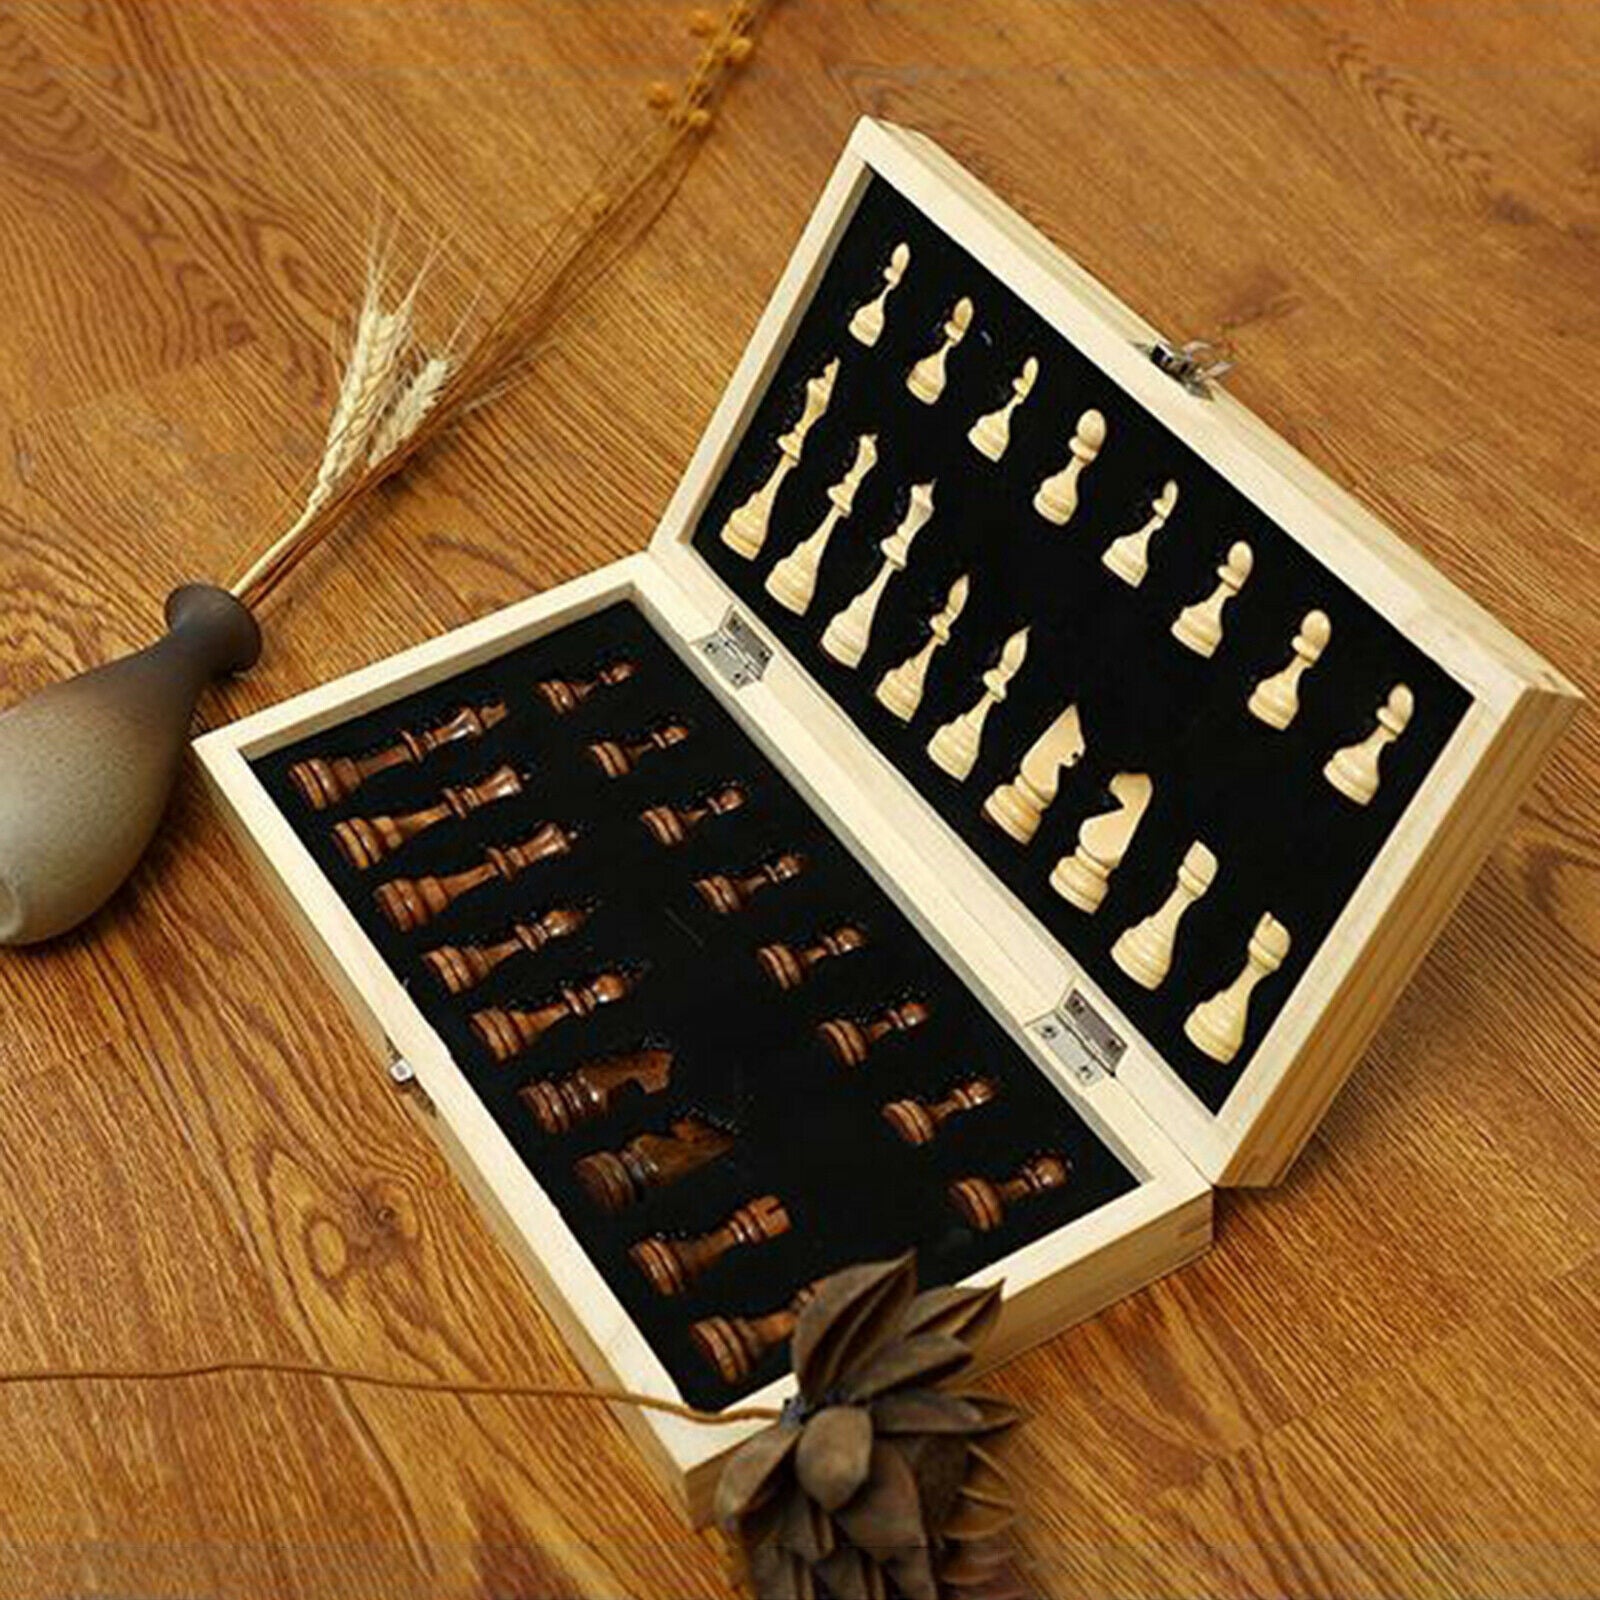 Folding Magnetic Wooden Chess Kit Handmade Foldable 34cm Chessboard Toys